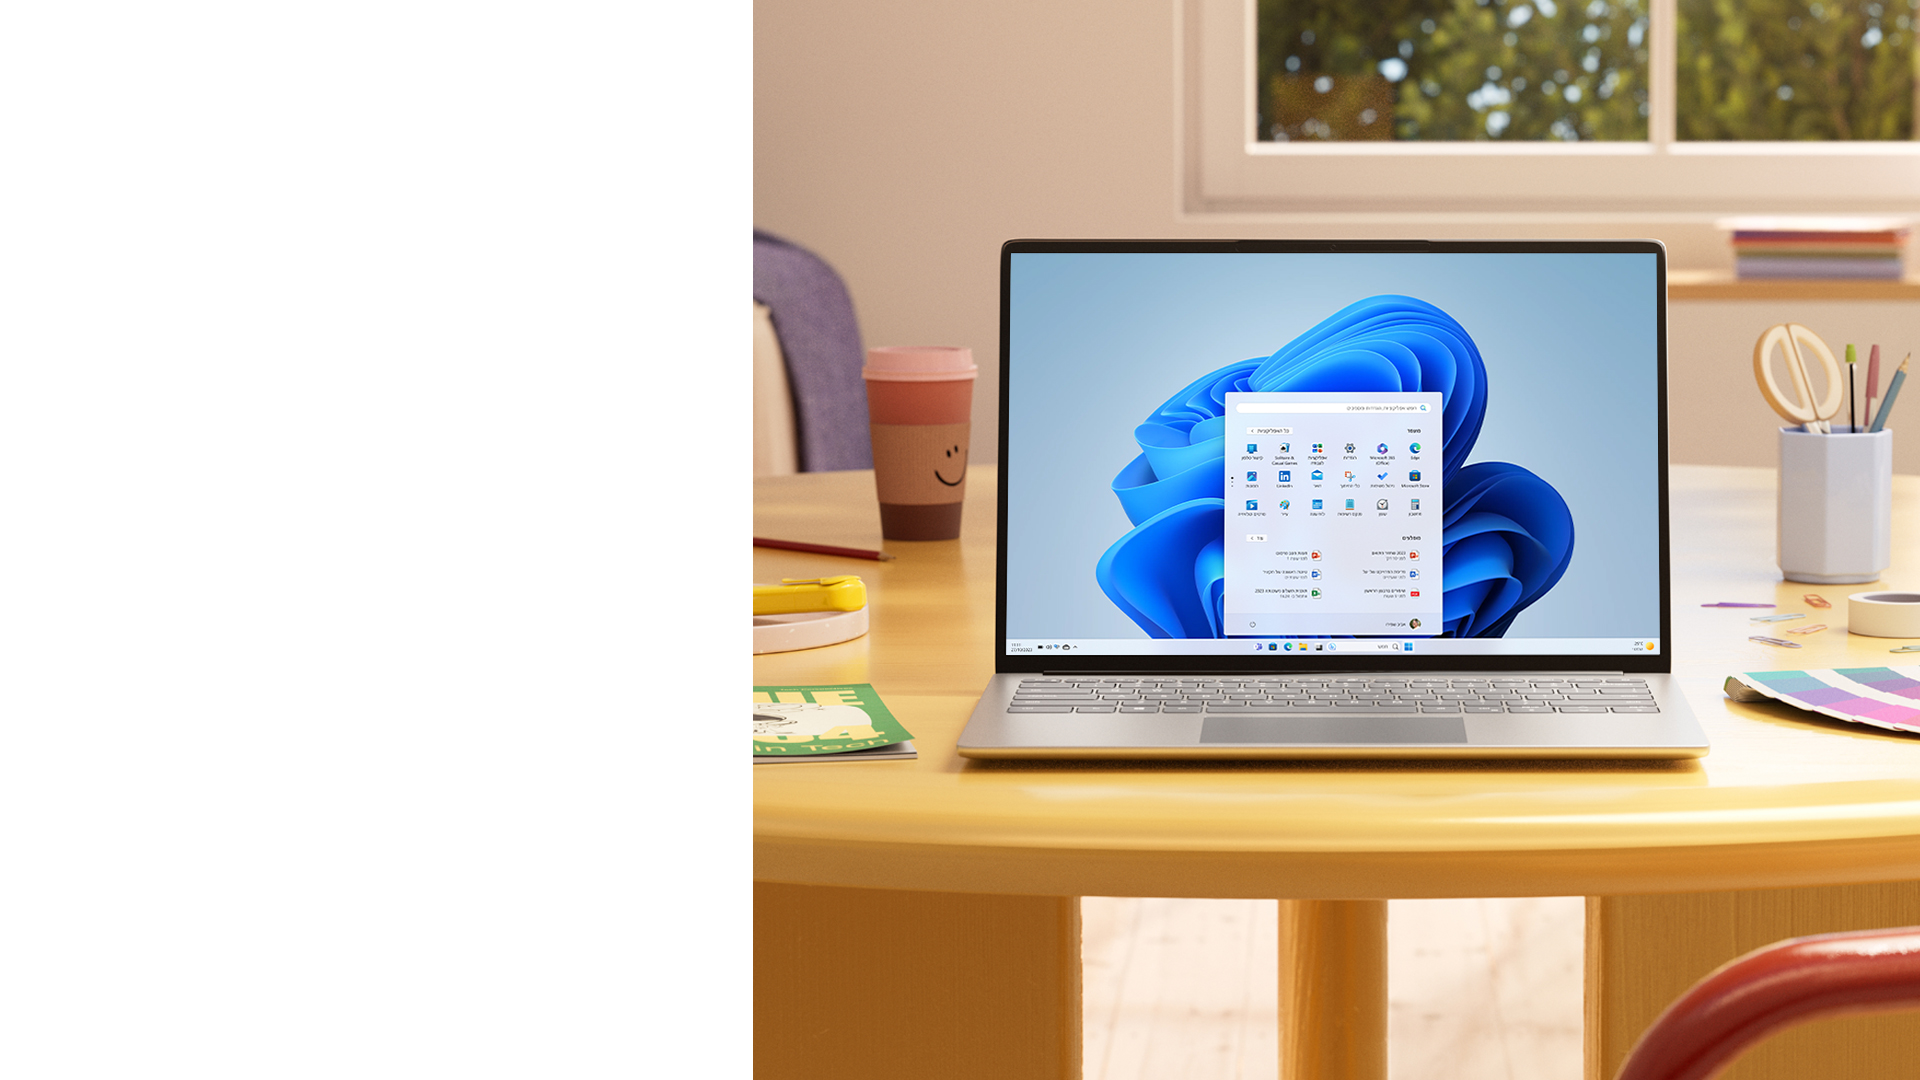 מחשב Windows 11, מונח על שולחן, עם תפריט 'התחל'